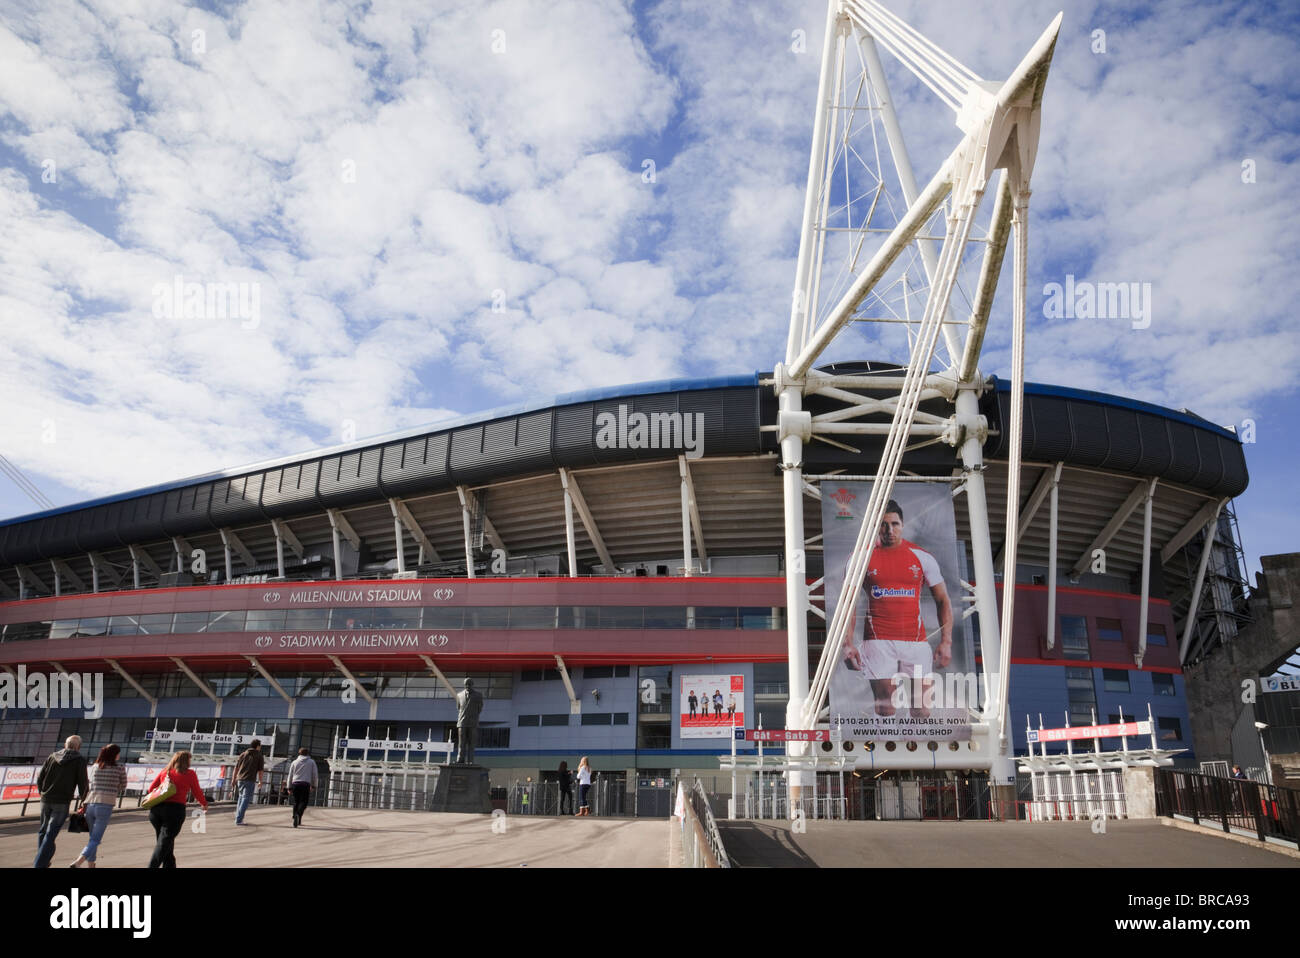 Fürstentum Stadion Welsh national Fußball und Rugby Veranstaltungsort mit Foto von Gavin Henson. Cardiff (Caerdydd), Glamorgan, South Wales, UK, Großbritannien. Stockfoto